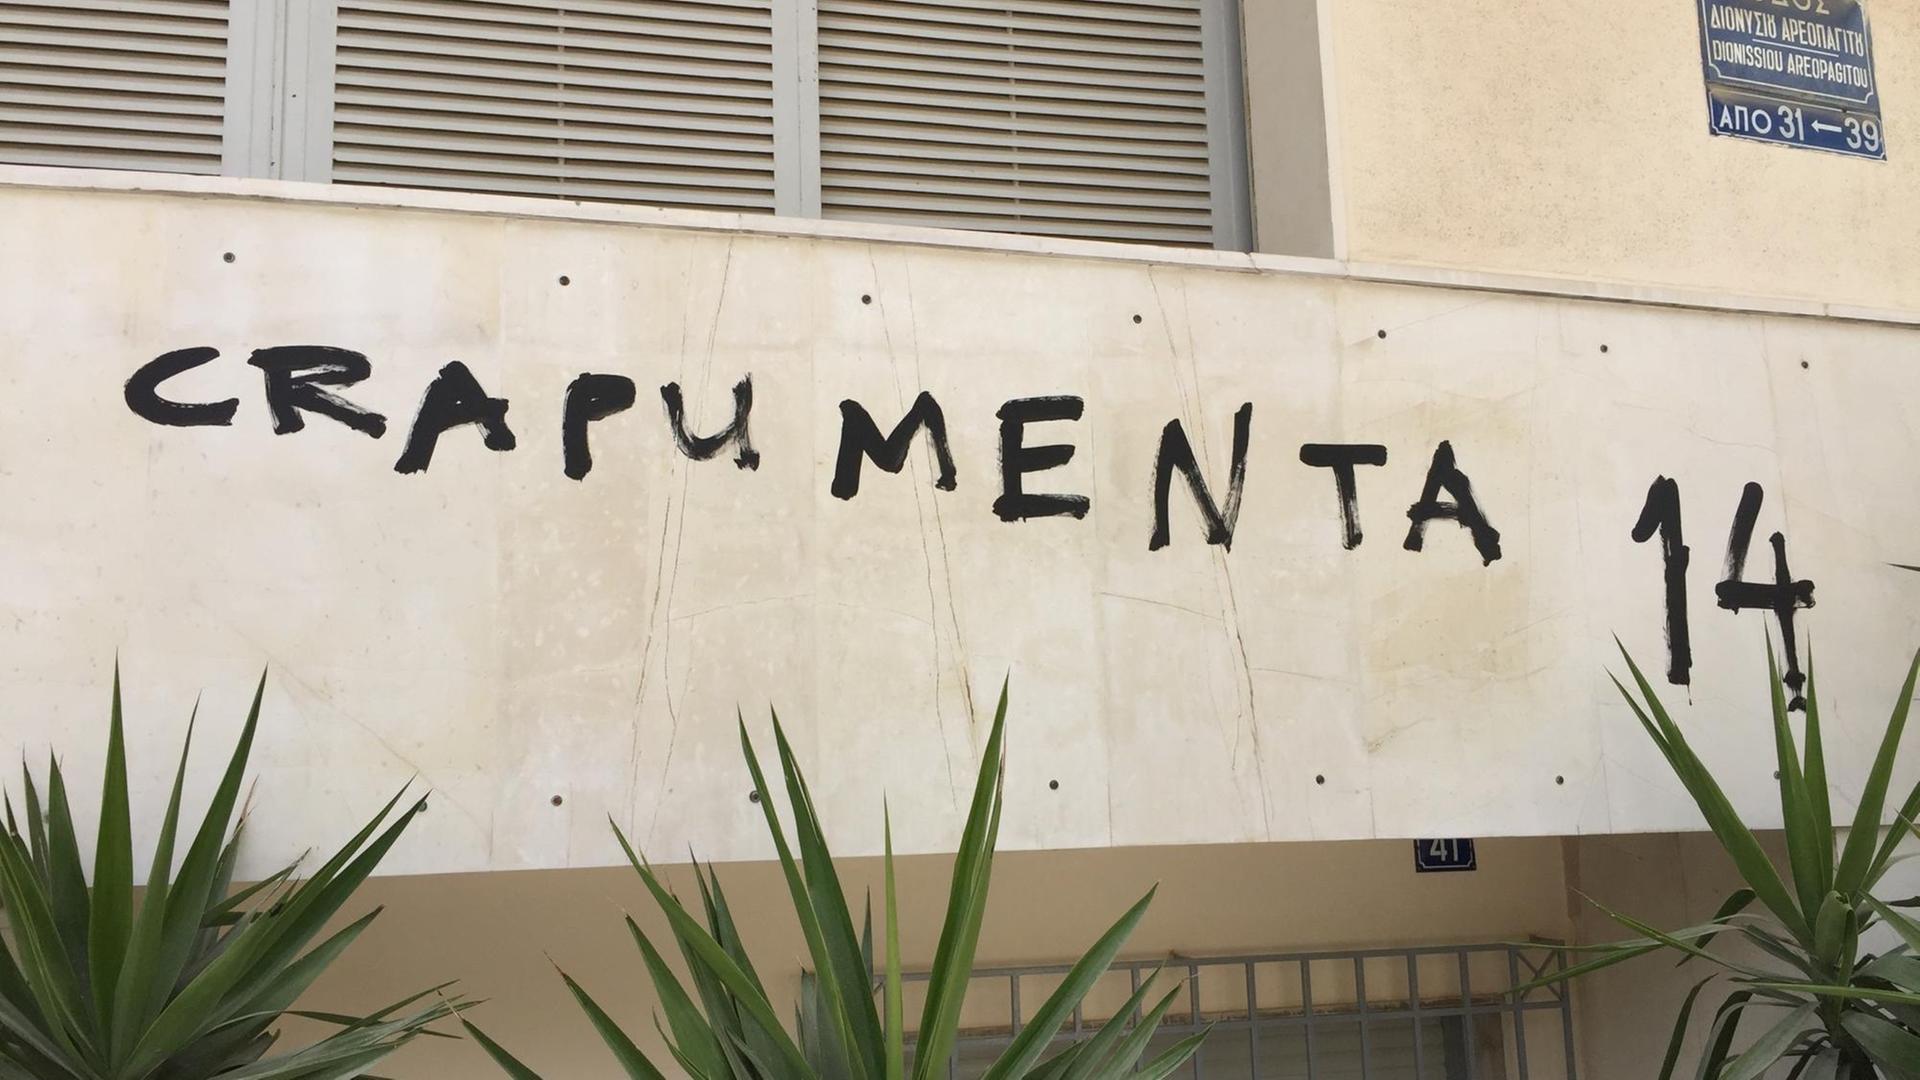 Ein Crapumenta-Graffiti in Athen.